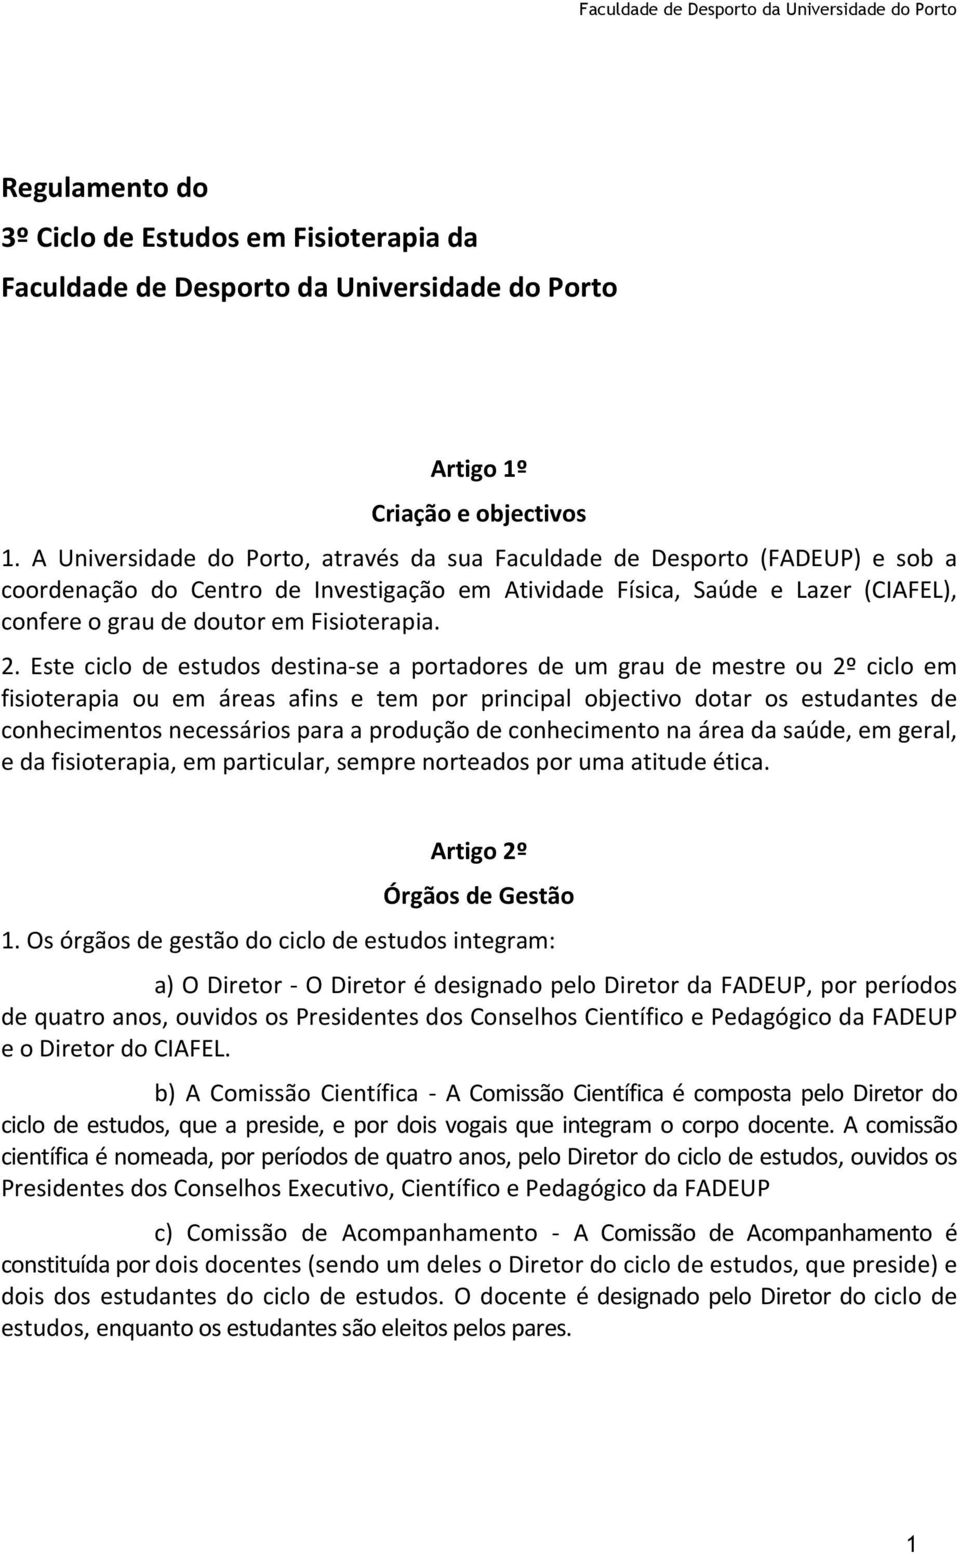 Regulamento do 3º Ciclo de Estudos em Fisioterapia da Faculdade de Desporto  da Universidade do Porto - PDF Free Download